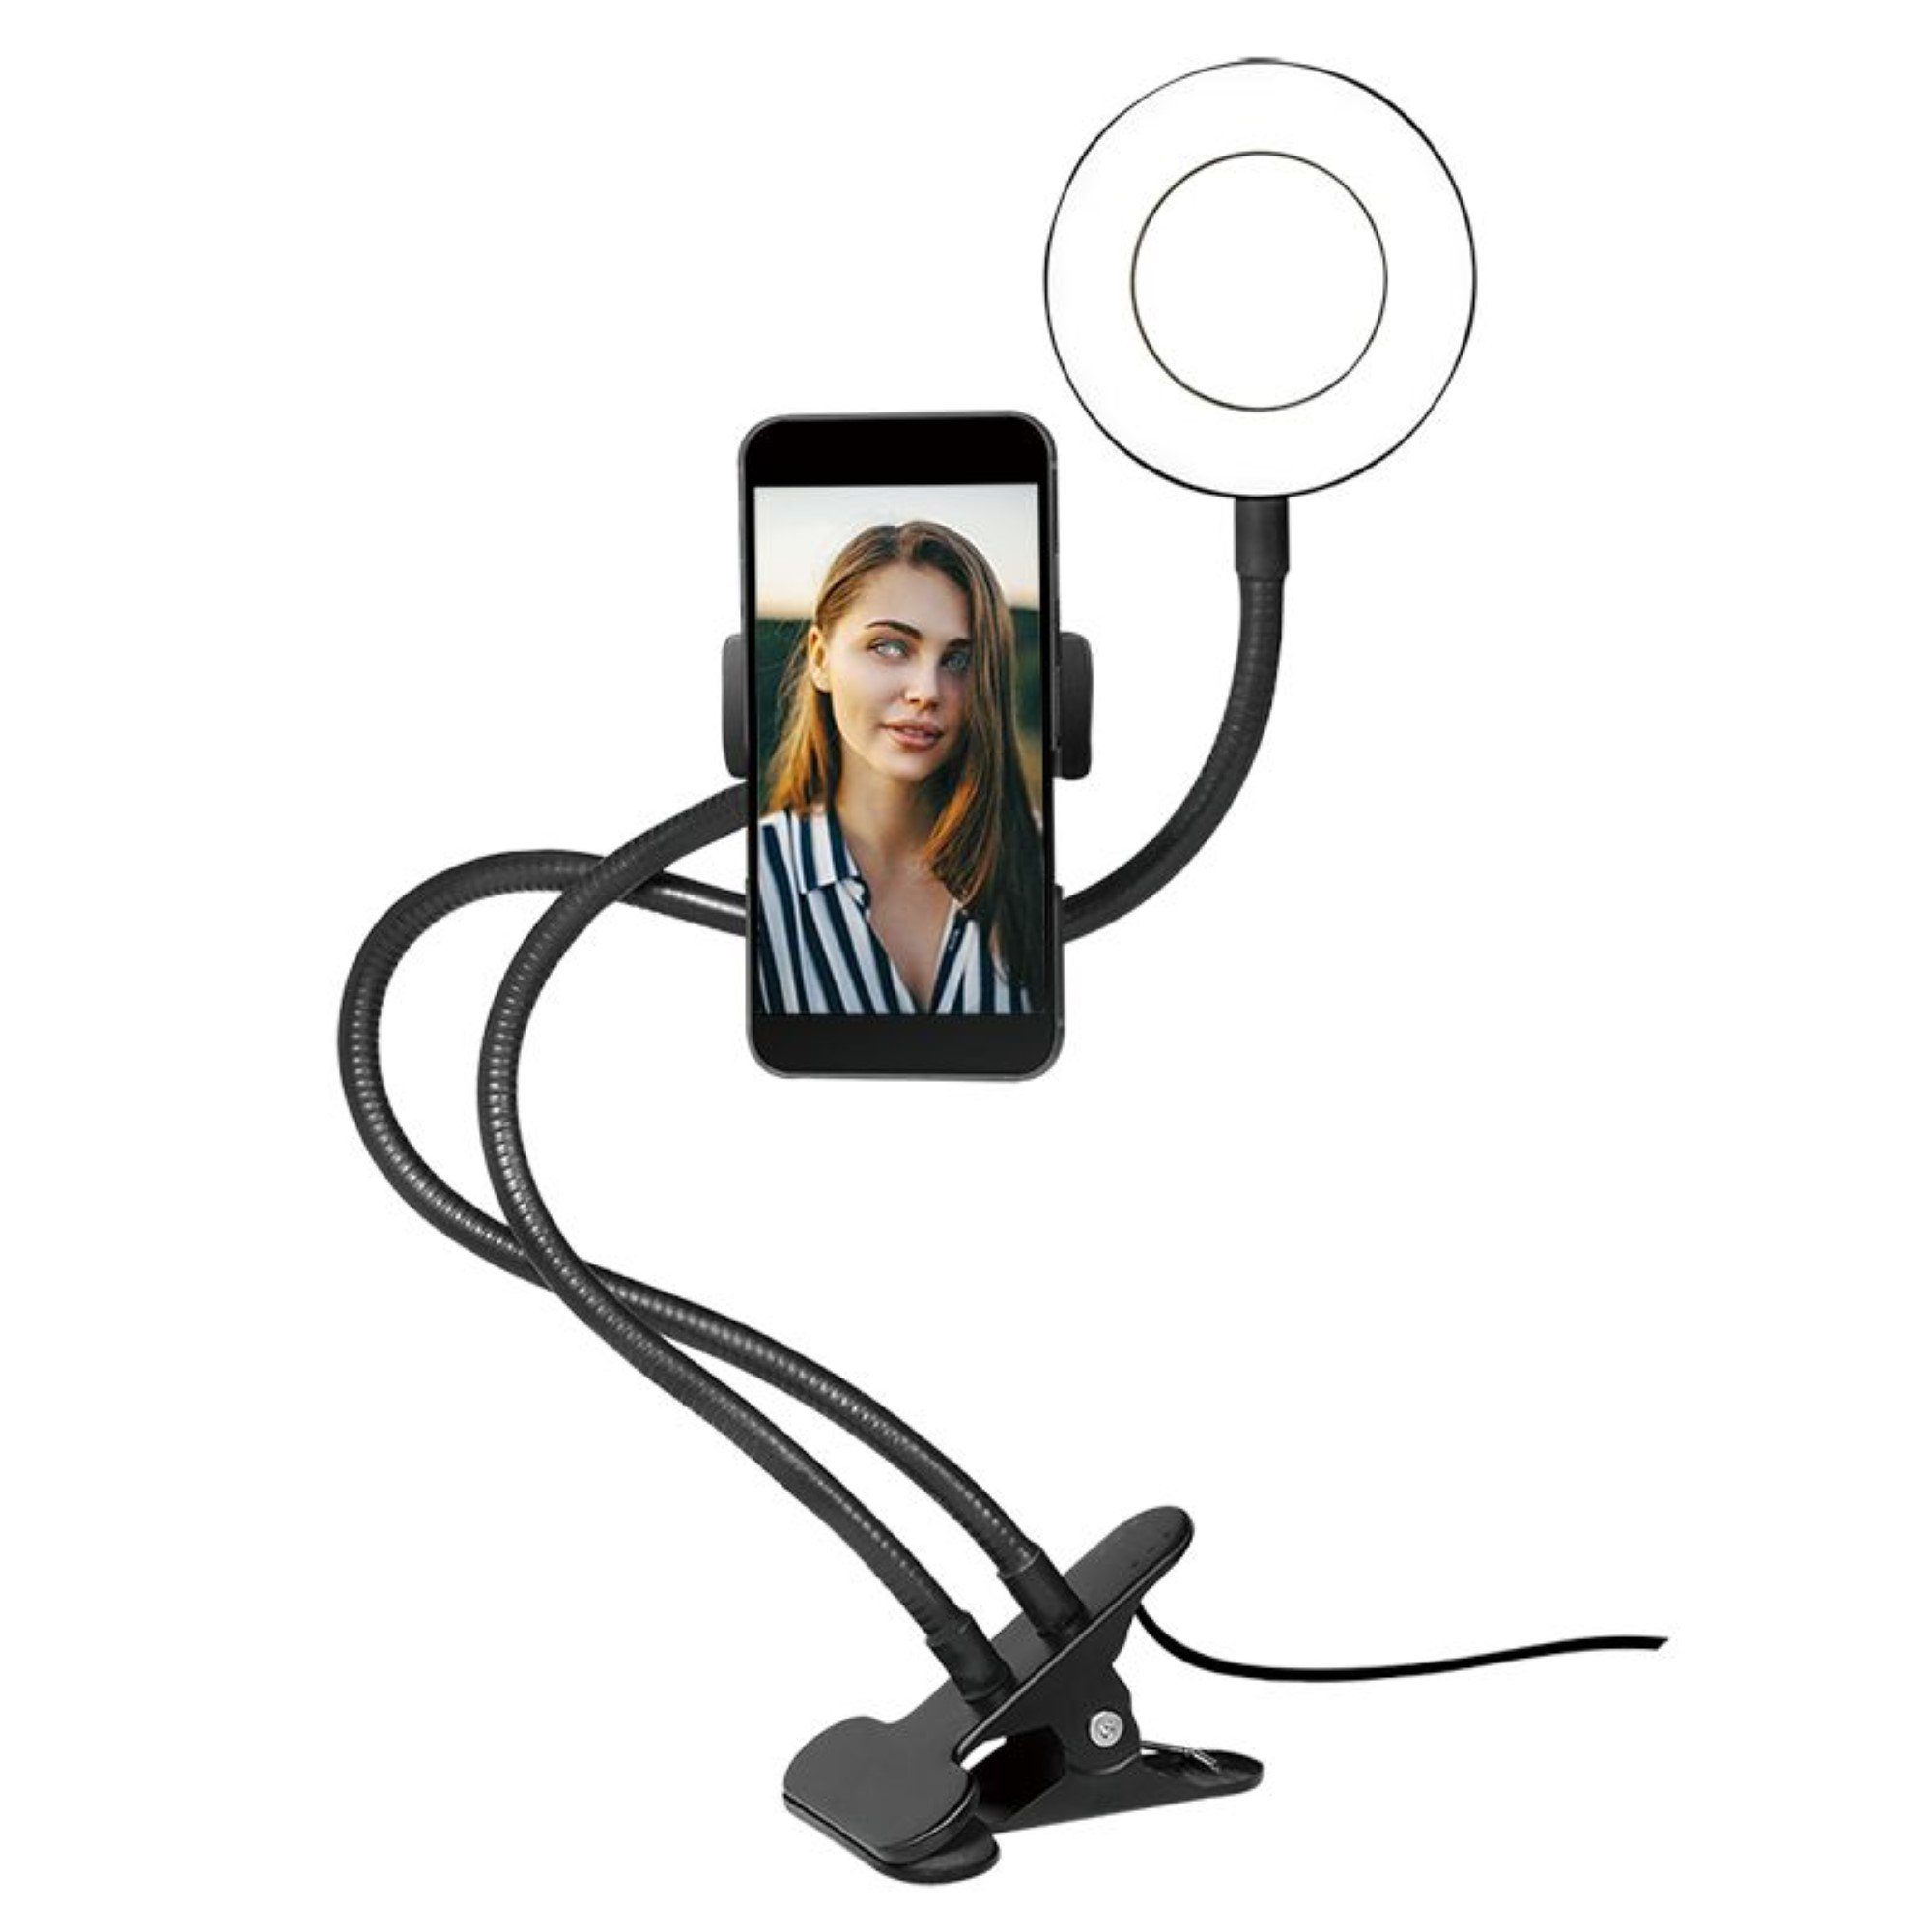 LogiLink Ringlicht 8.5cm Smartphone Ringlicht-Klemmhalterung Perfekt für Selfies, Ringlicht mit Led und Klemme